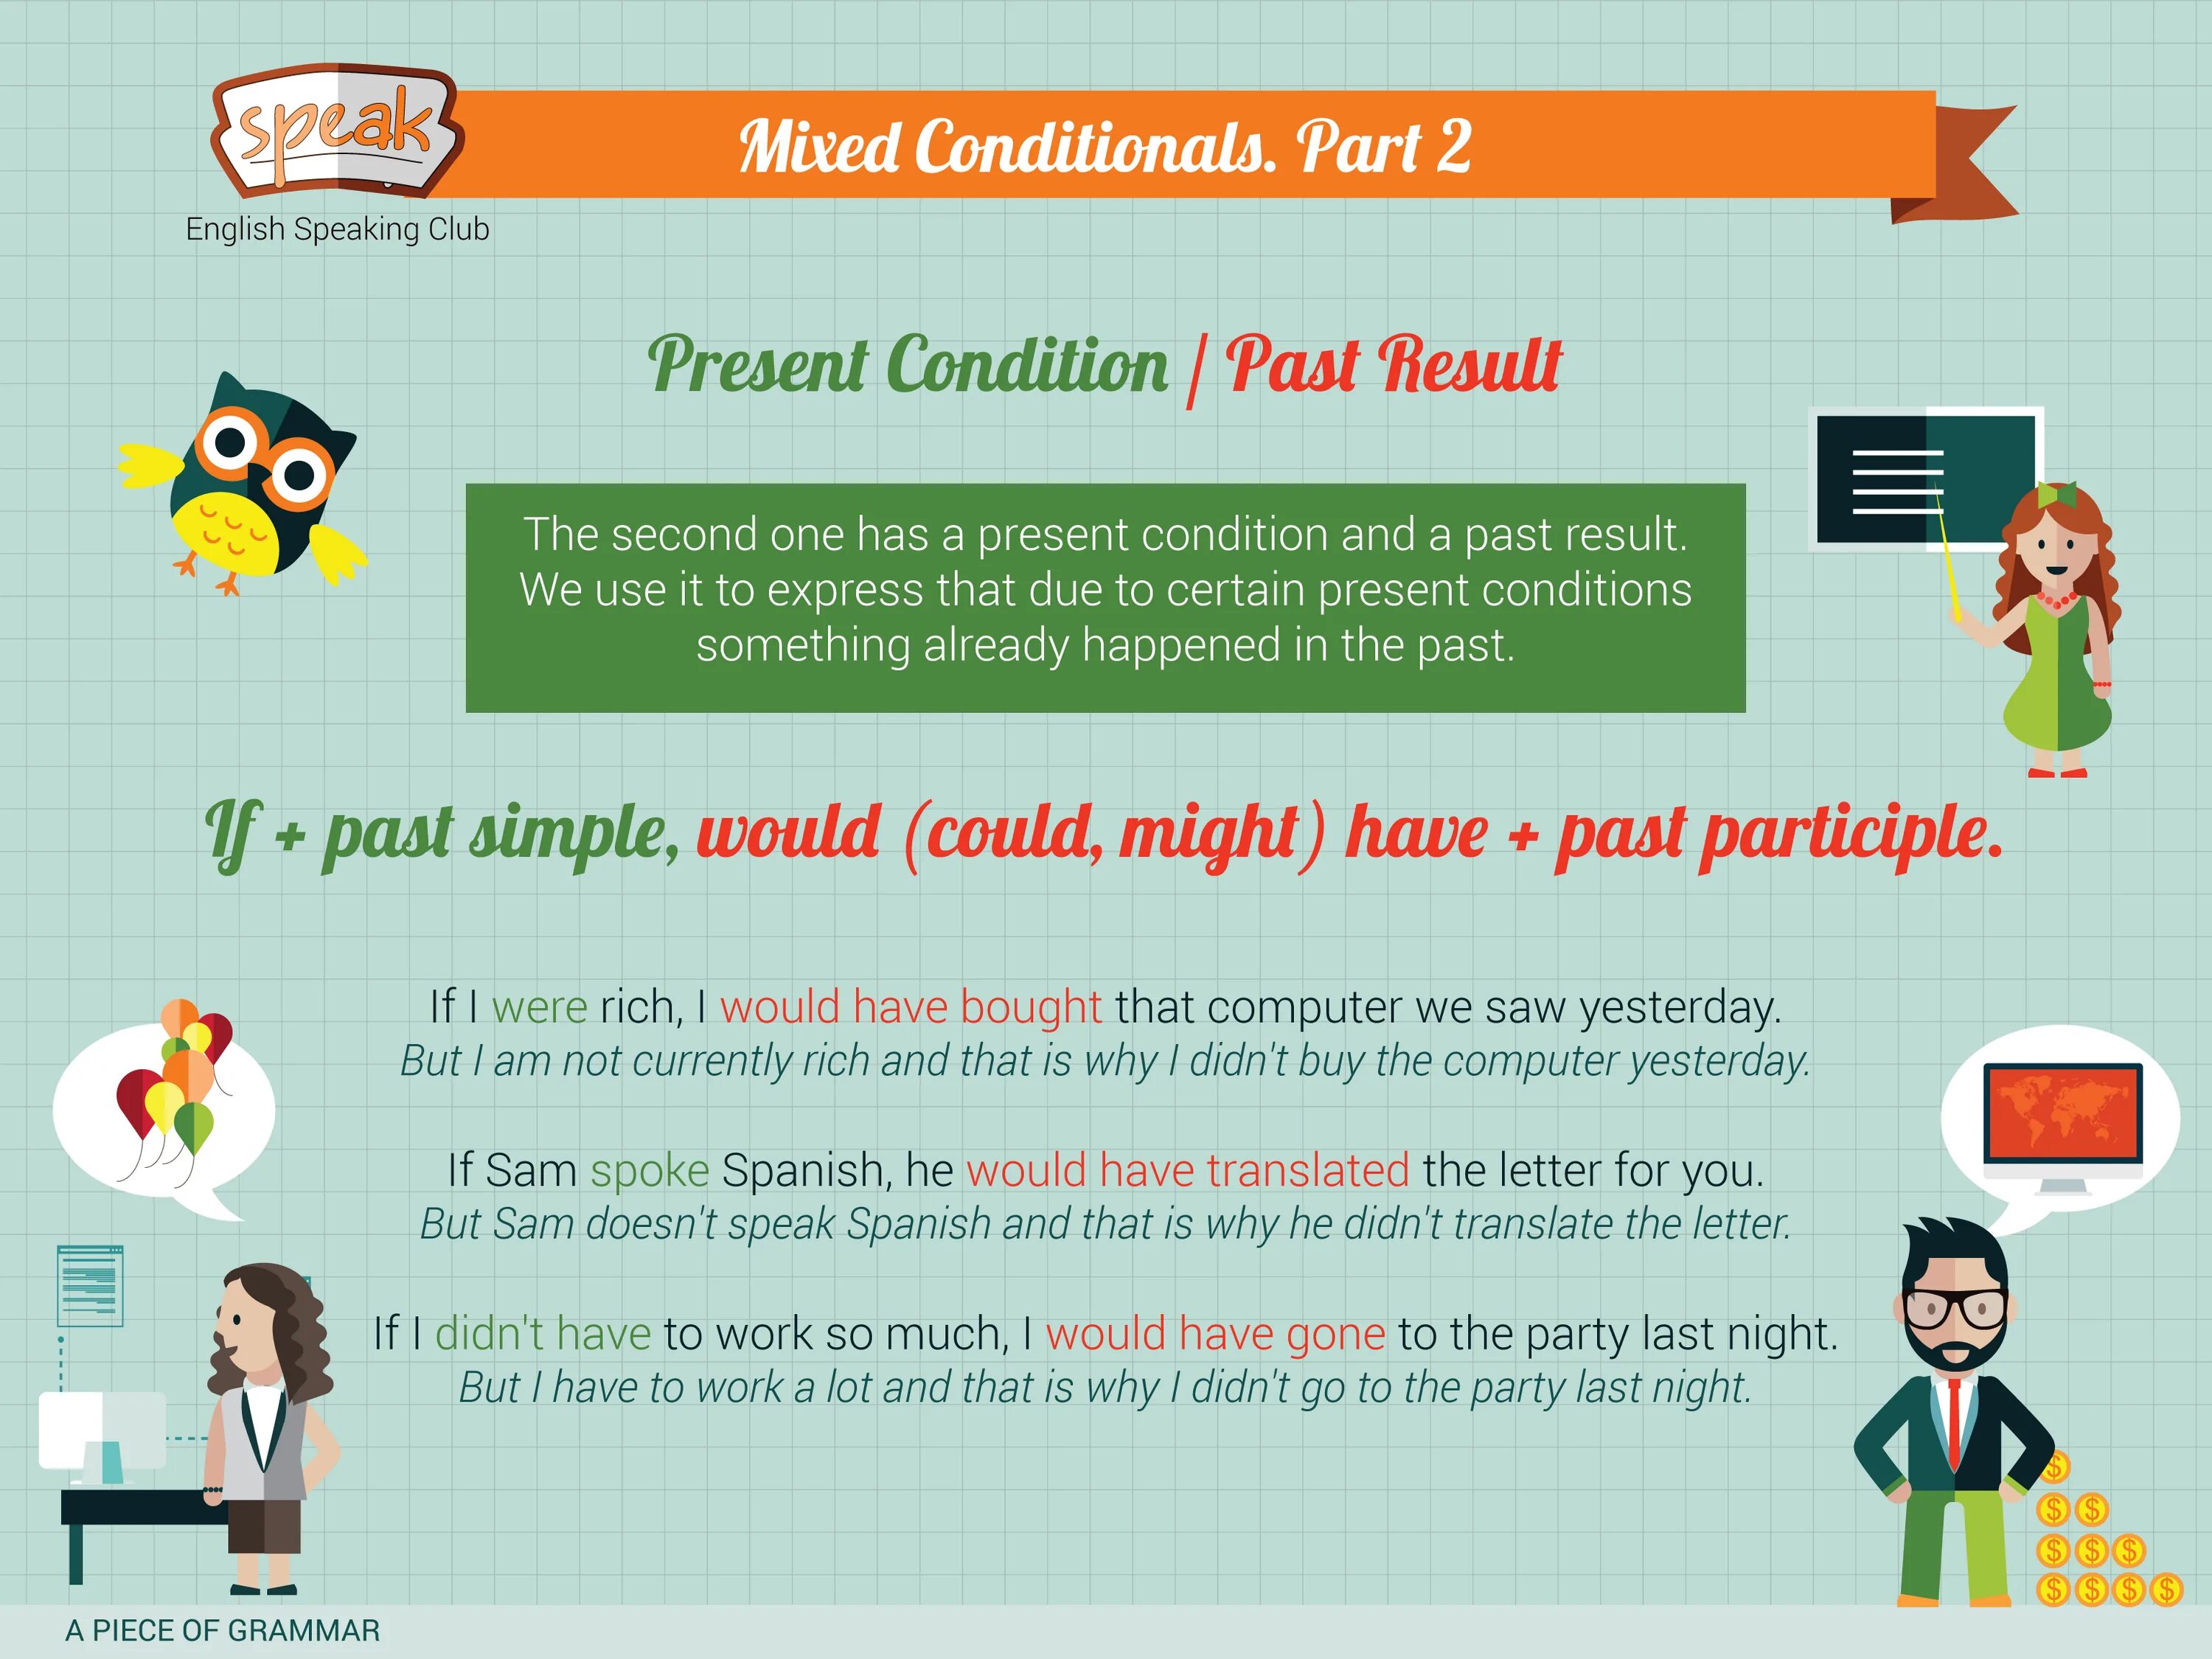 Mixed 2 conditional. Mixed conditionals. Mixed conditionals в английском языке. Mixed conditionals схема. Предложения с Mixed conditionals.